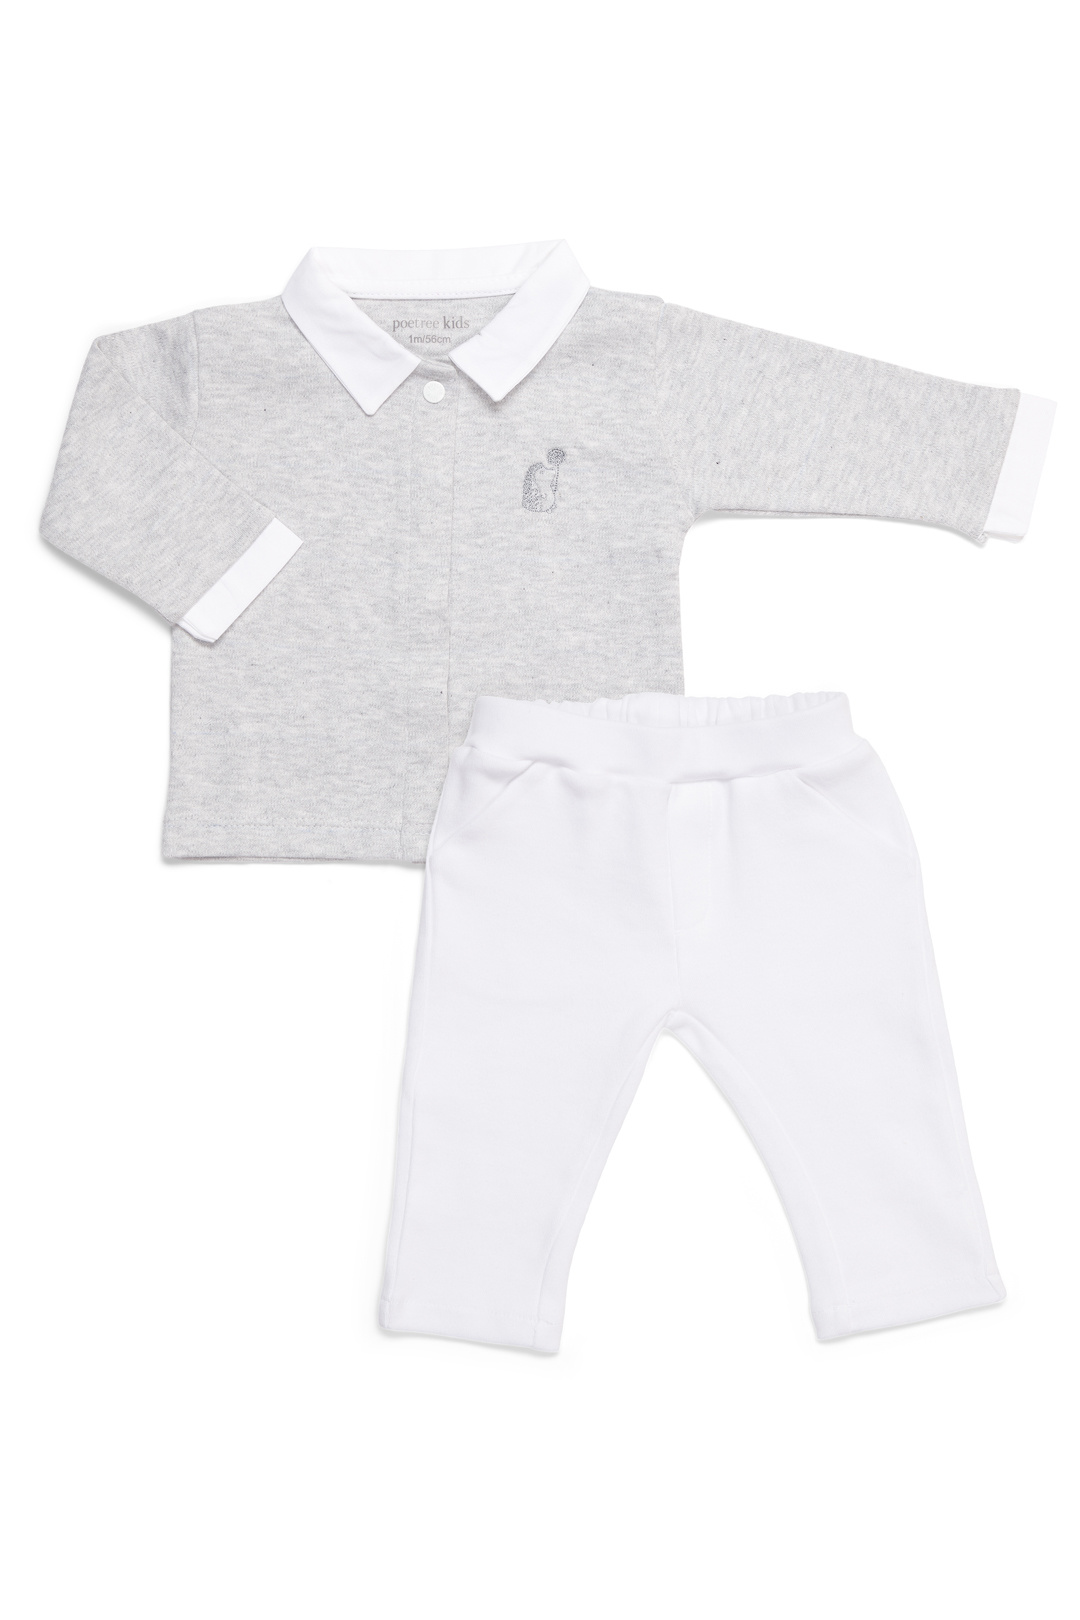 2 - Delige baby set grijs shirt wit broekje - Poetree Kids